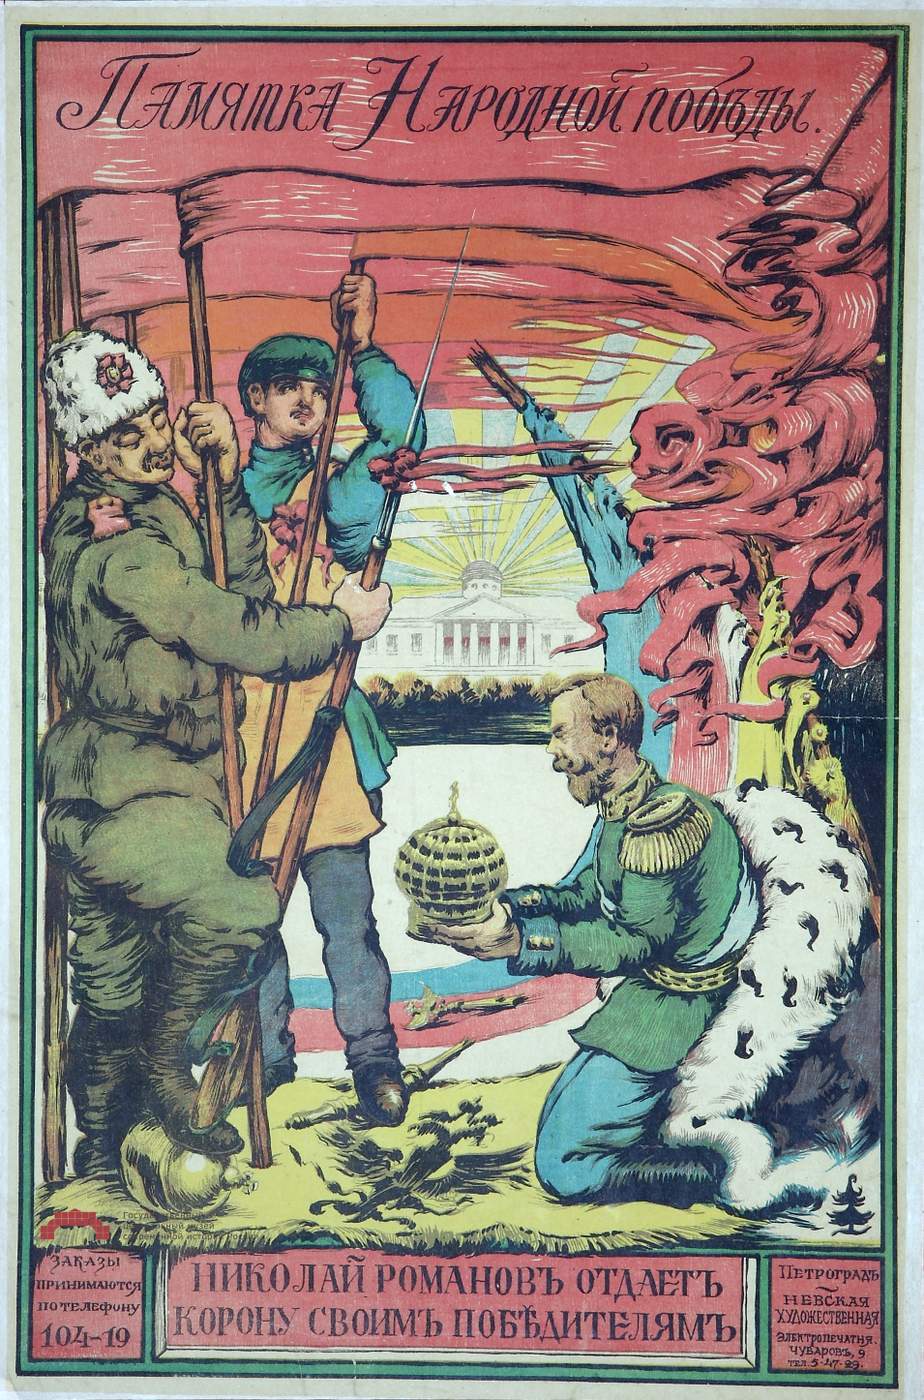 1917 tarihli Halkın Zaferi adlı bu posterde, son Çar Nikolay Romanov'un tacını halka sunması tasvir ediliyor